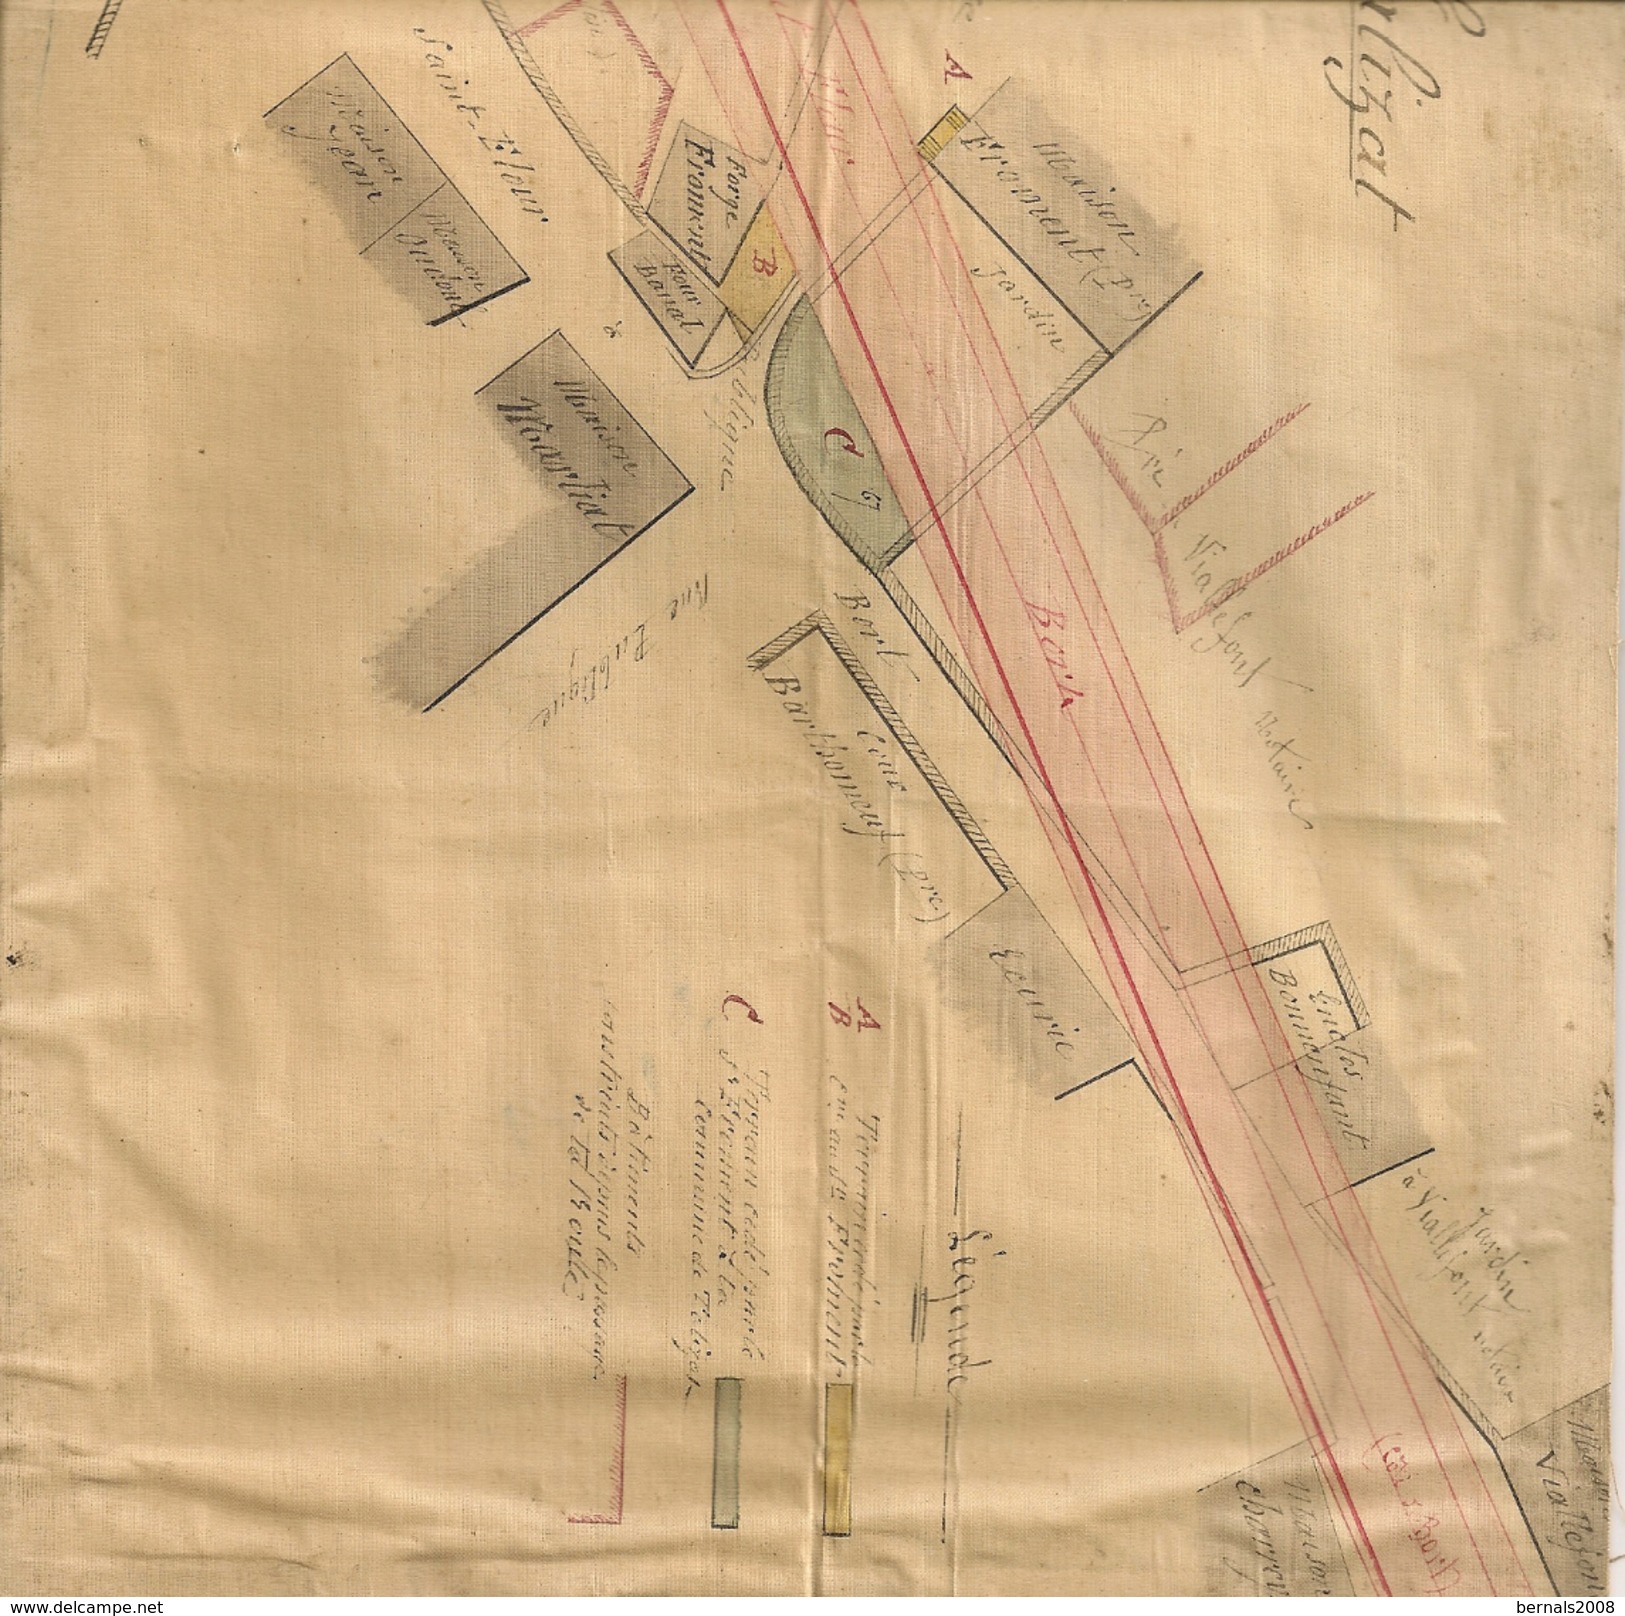 15 - TALIZAT - Plan Des Parcelles De Terrain - 1874 - Autres Plans